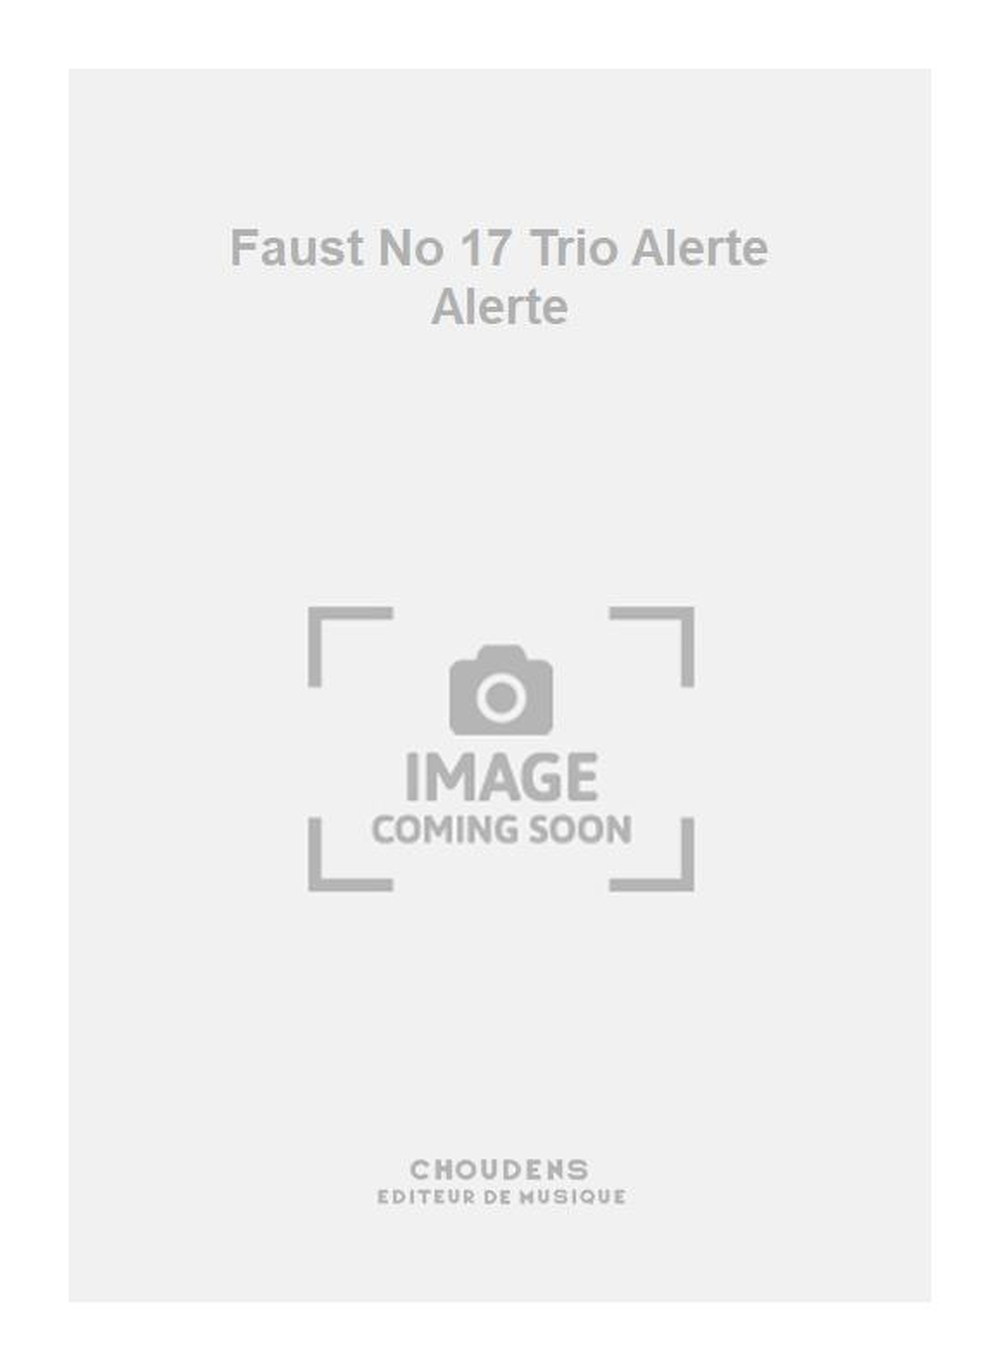 Charles Gounod: Faust No 17 Trio Alerte Alerte